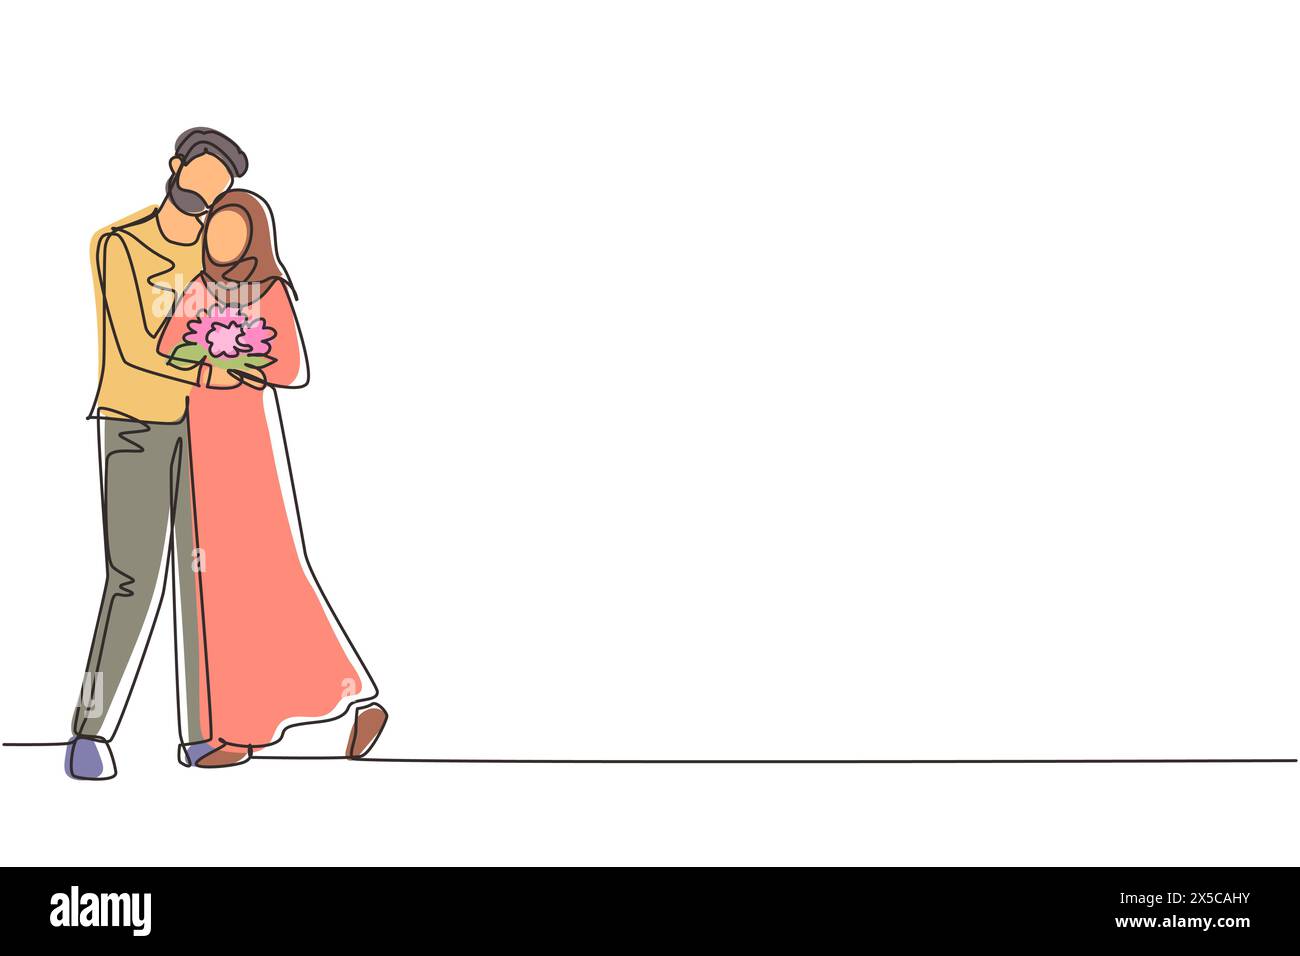 Ein einziger arabischer Mann gibt Blumen an die Frau und umarmt sie. Junger Mann, der der Frau einen Blumenstrauß gibt. Glückliches romantisches Paar i Stock Vektor